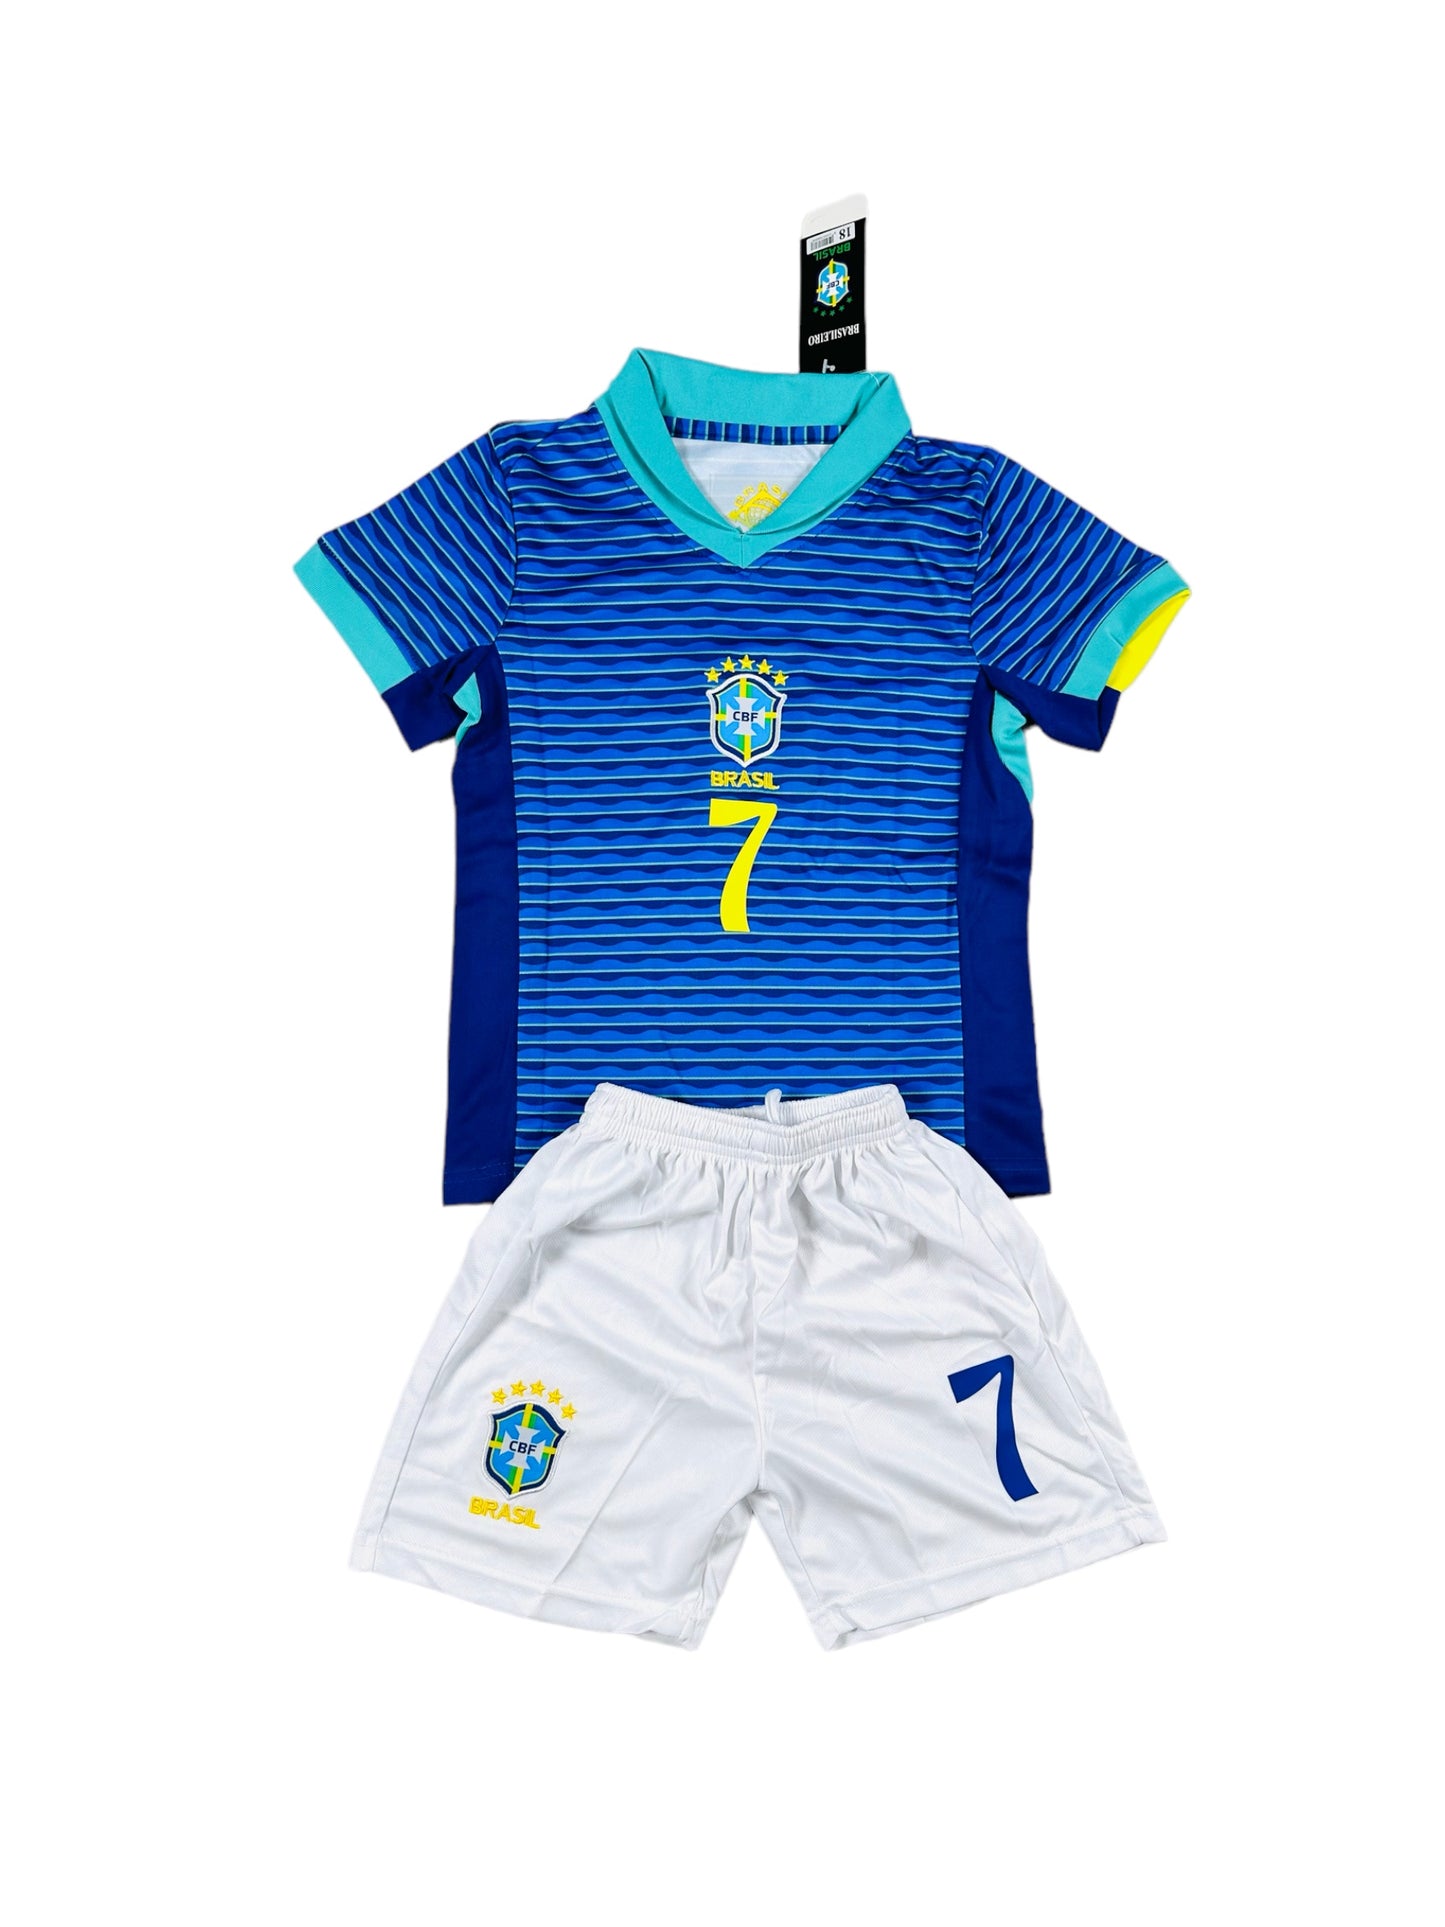 Vini Jr #7 Brazil  away Youth soccer set 2024/25